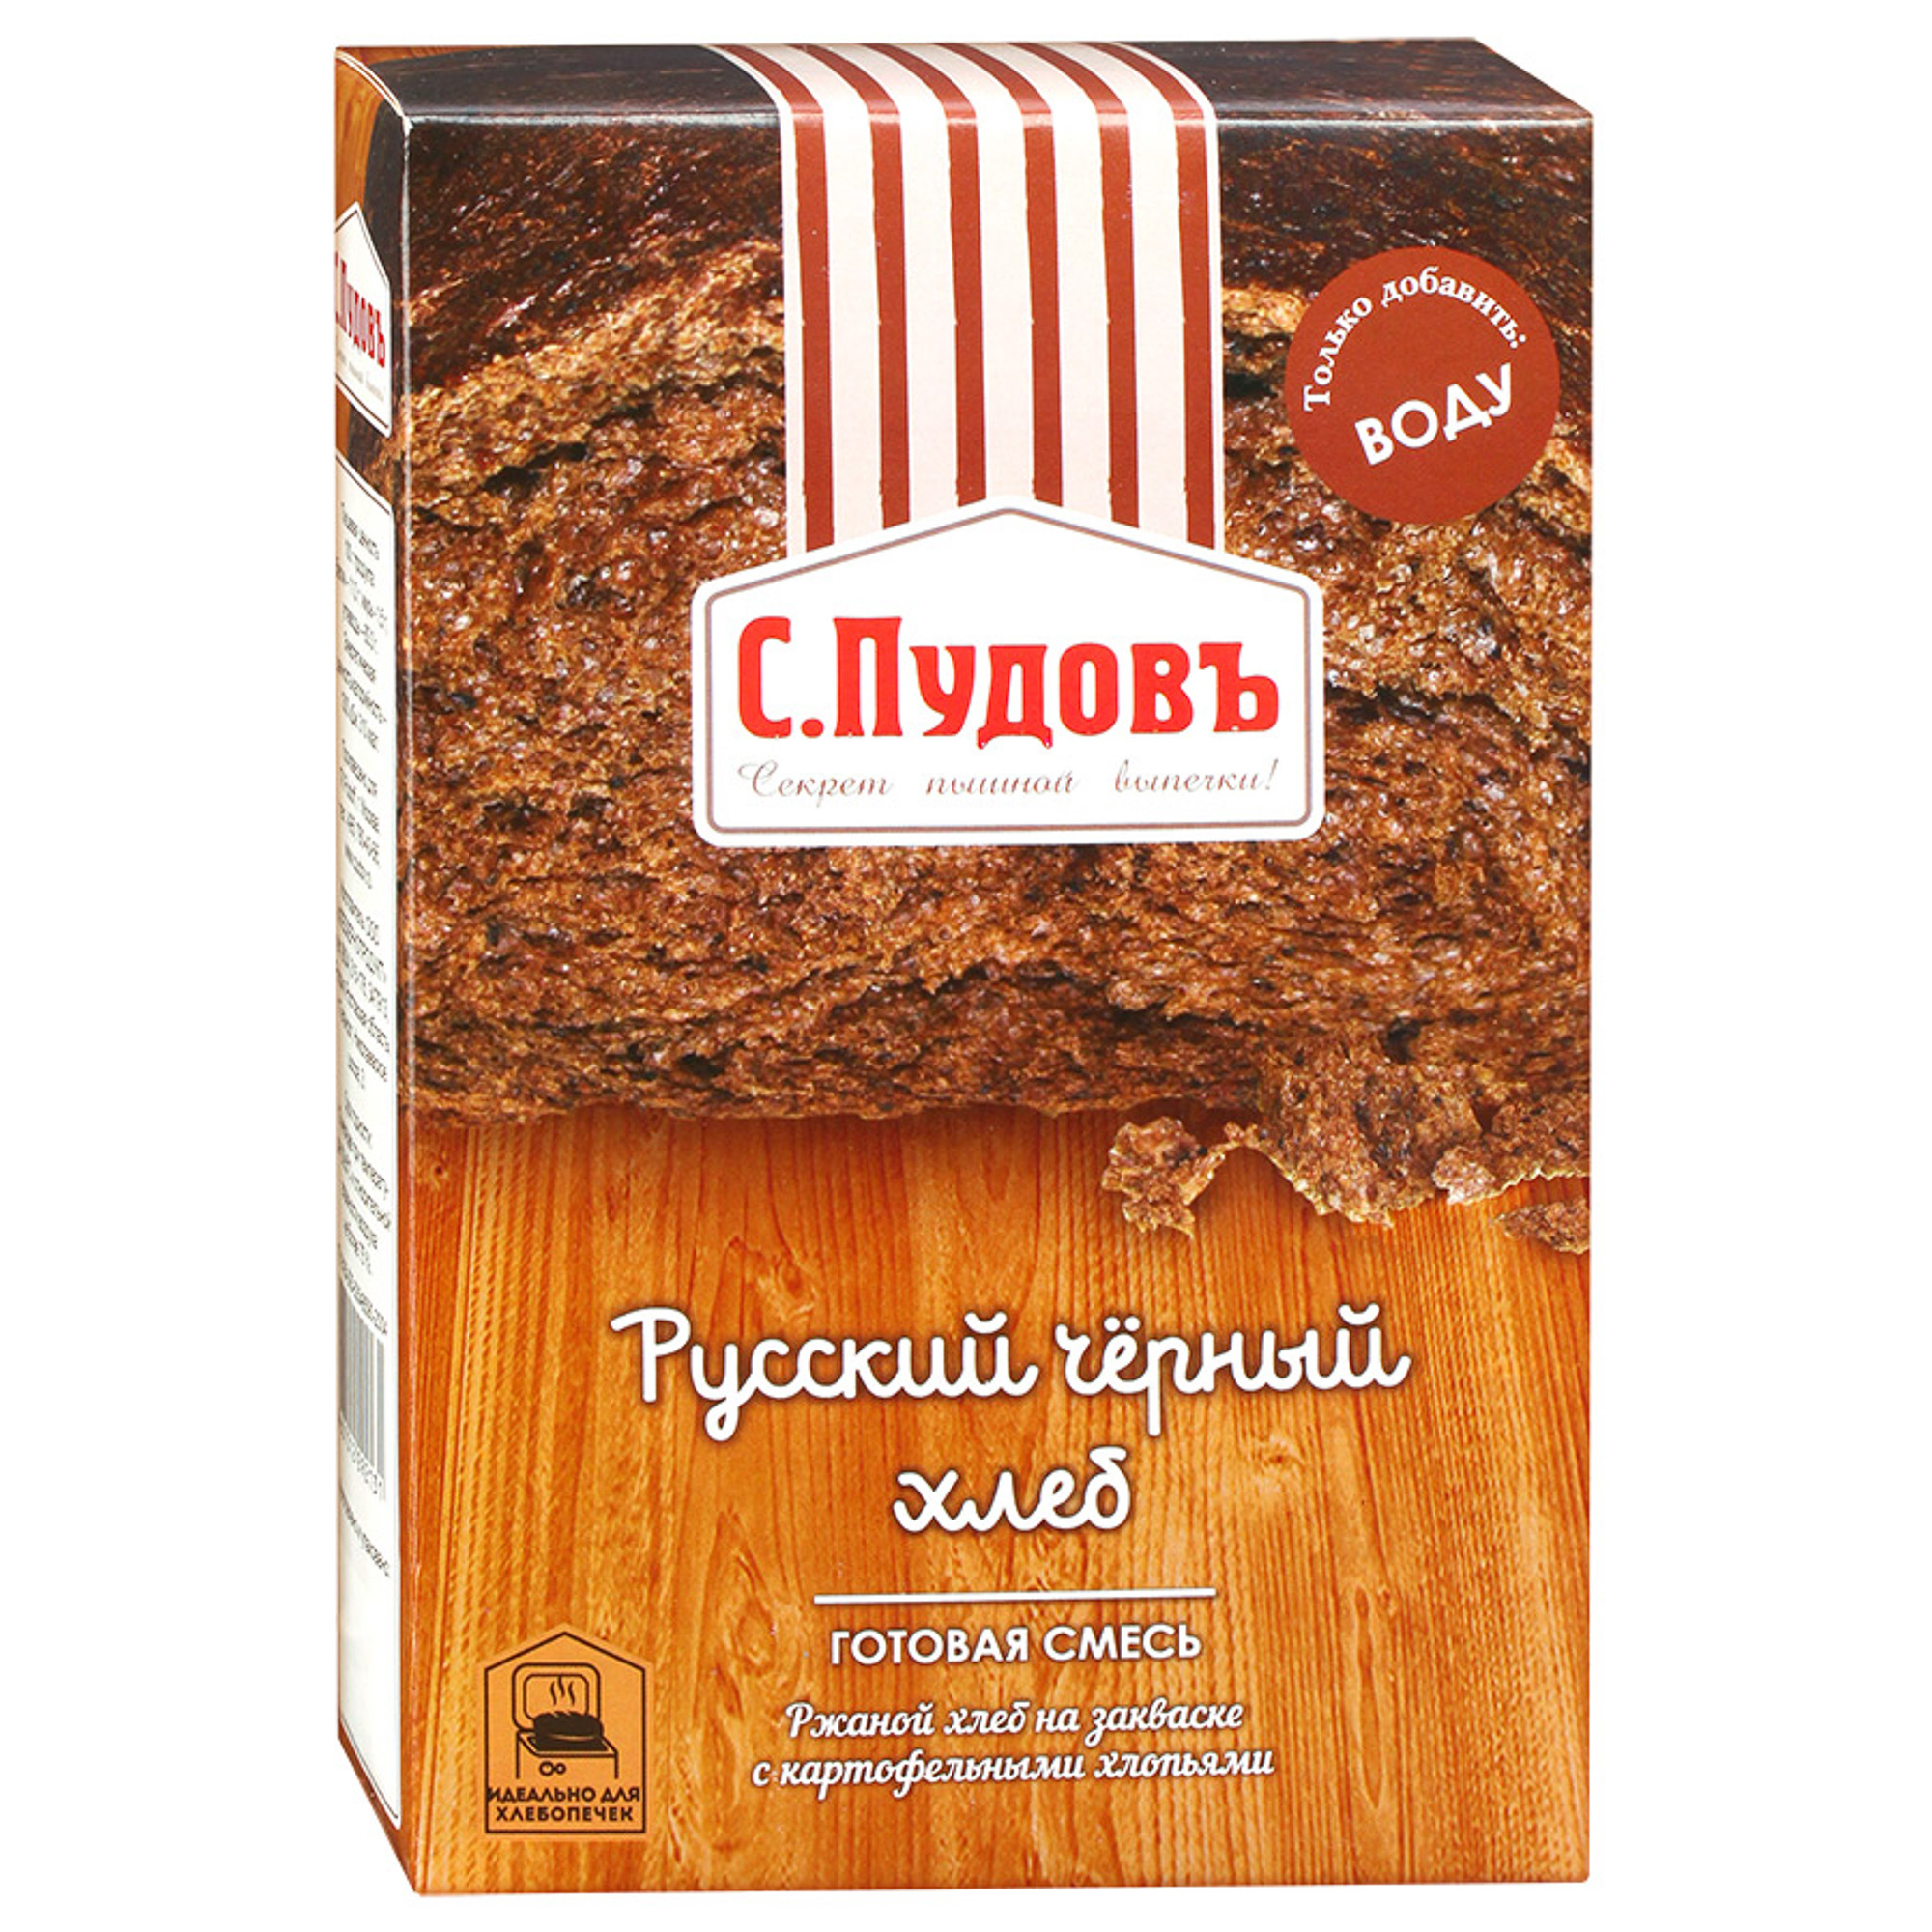 мука пшеничная с пудовъ хлебопекарная в с 1 кг Хлебная смесь С.Пудовъ Русский черный хлеб 500 г